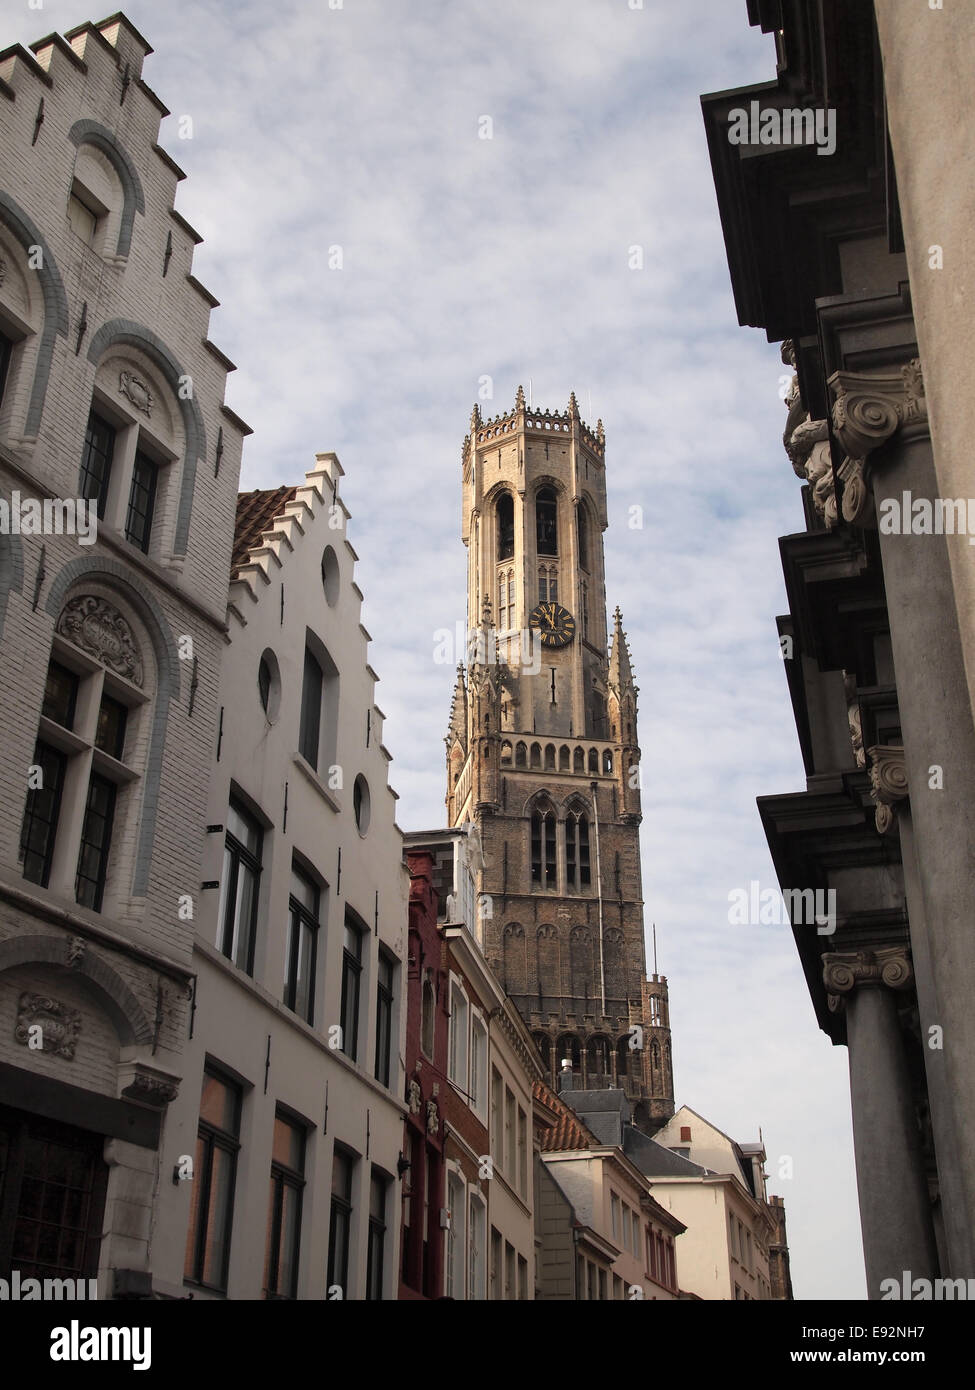 El campanario de Brujas, o Belfort, es un campanario medieval que data de alrededor de 1240, en la histórica ciudad de Brujas en Bélgica Foto de stock